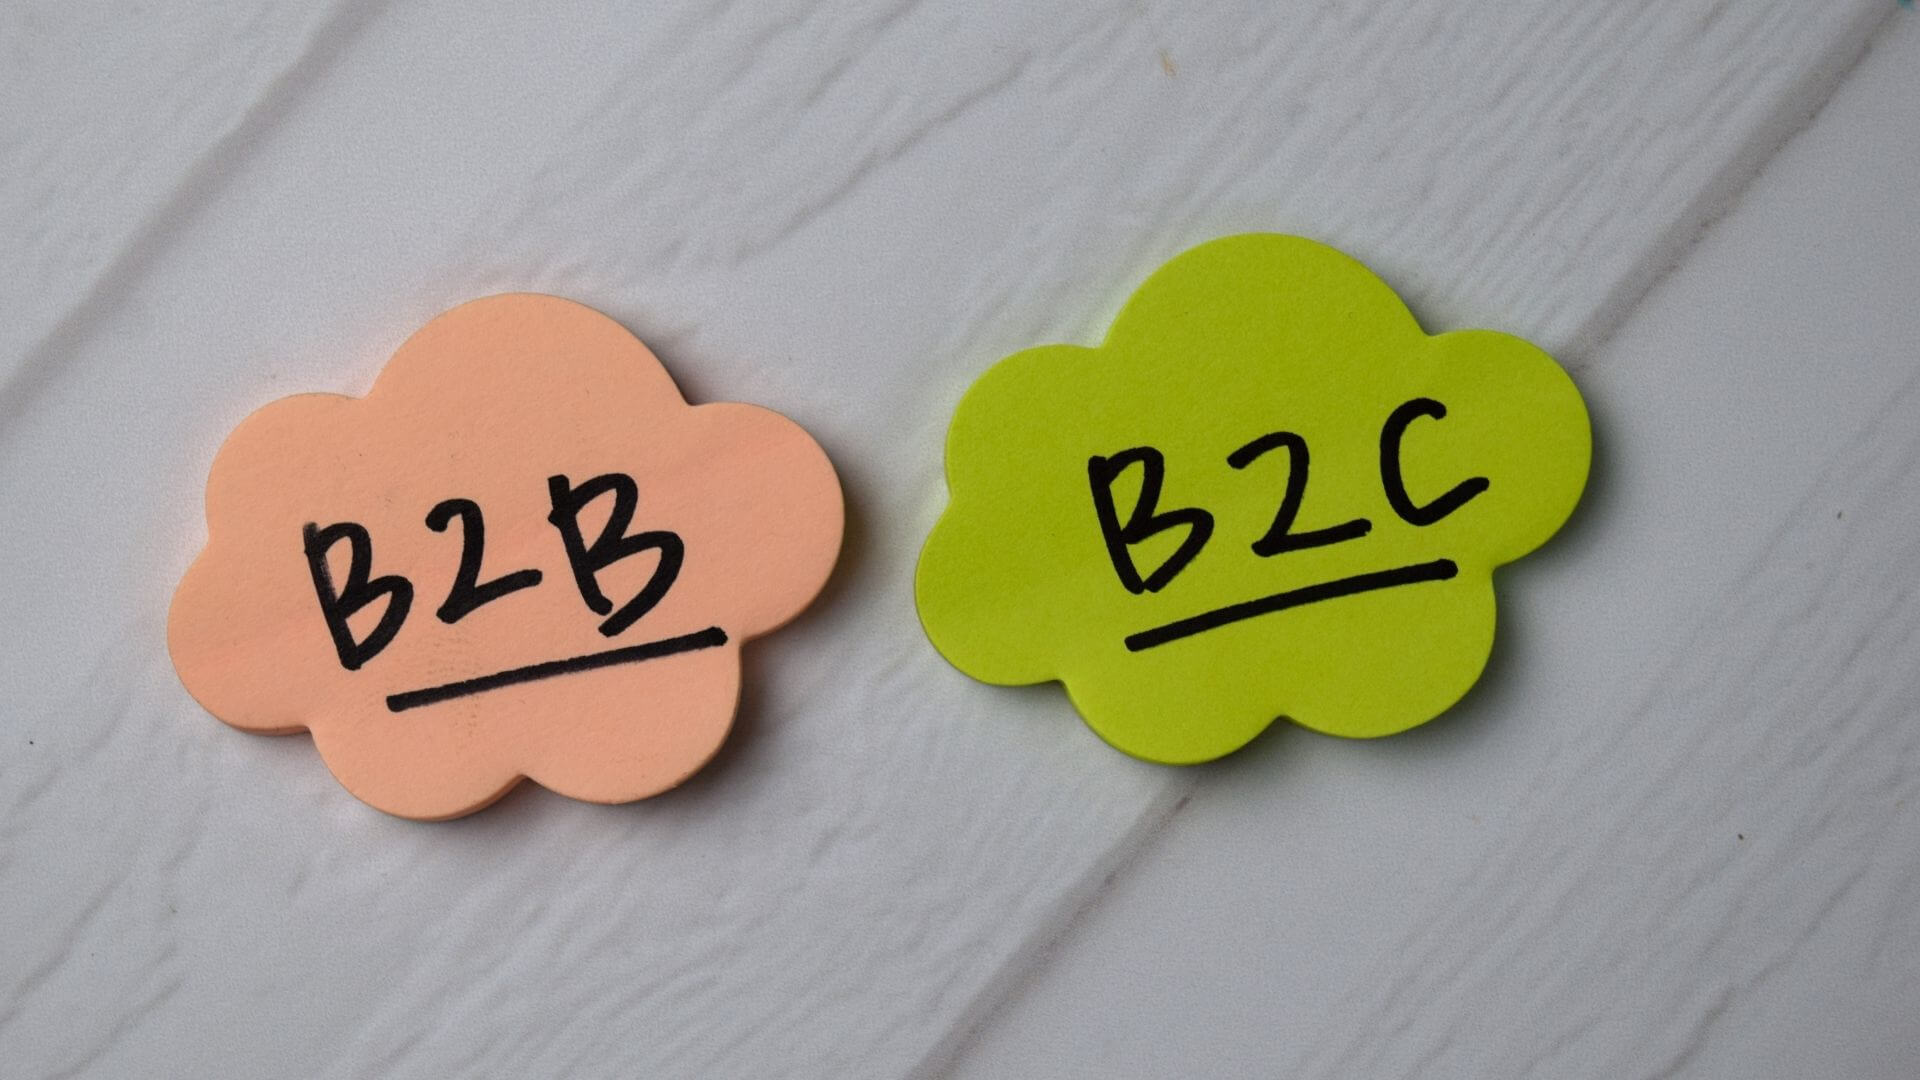 B2B so với B2C: Đâu là sự khác biệt? | toàn cầu đơn giản